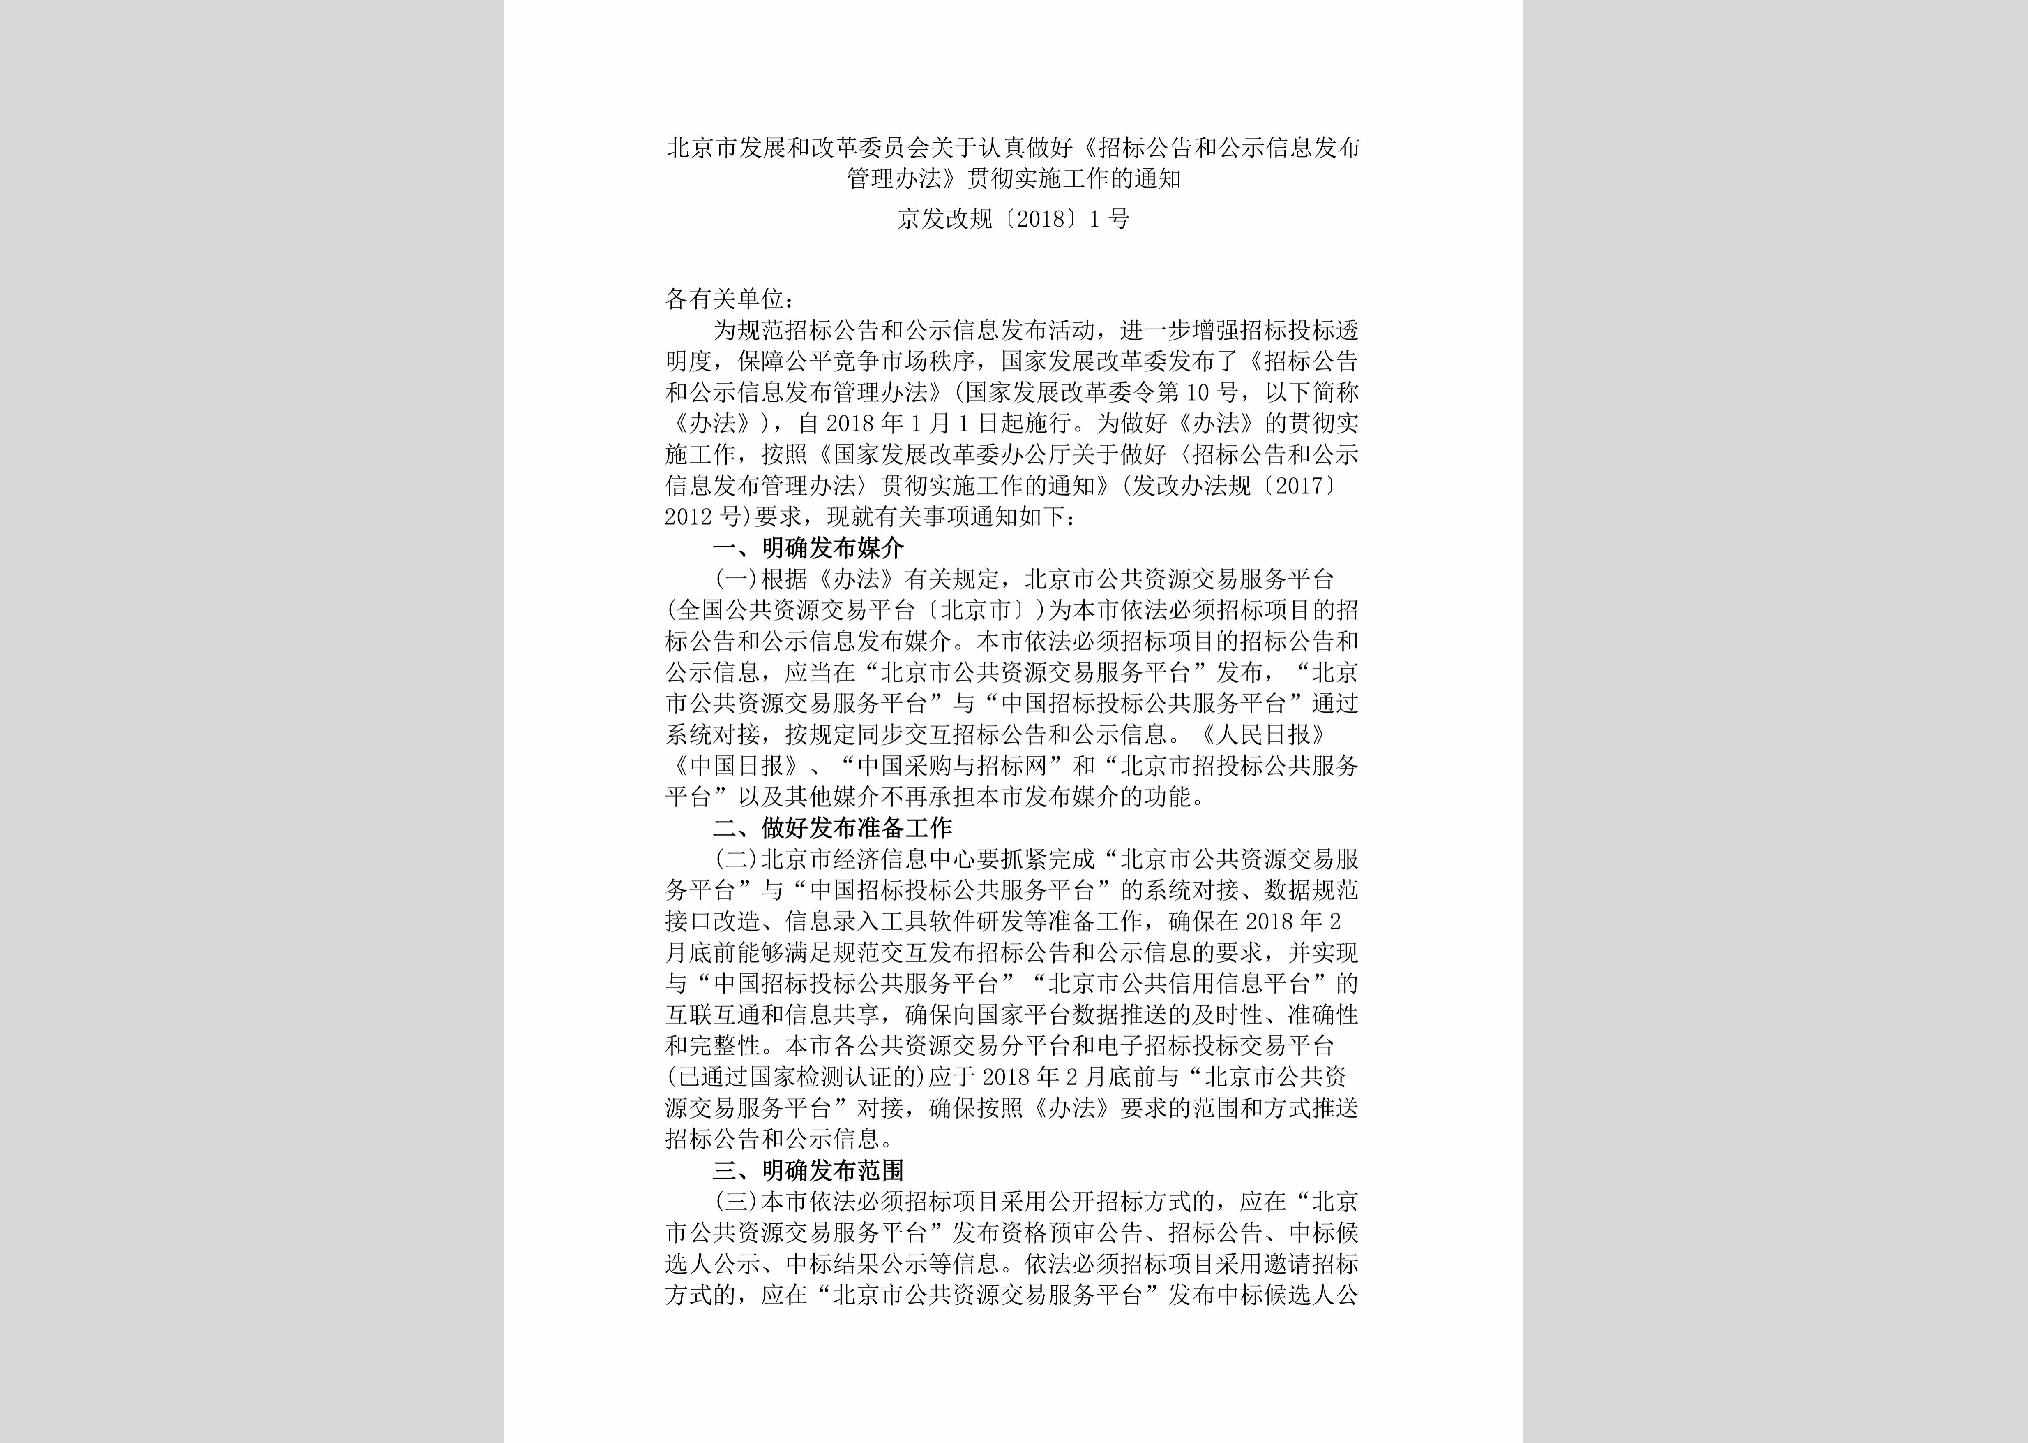 京发改规[2018]1号：北京市发展和改革委员会关于认真做好《招标公告和公示信息发布管理办法》贯彻实施工作的通知